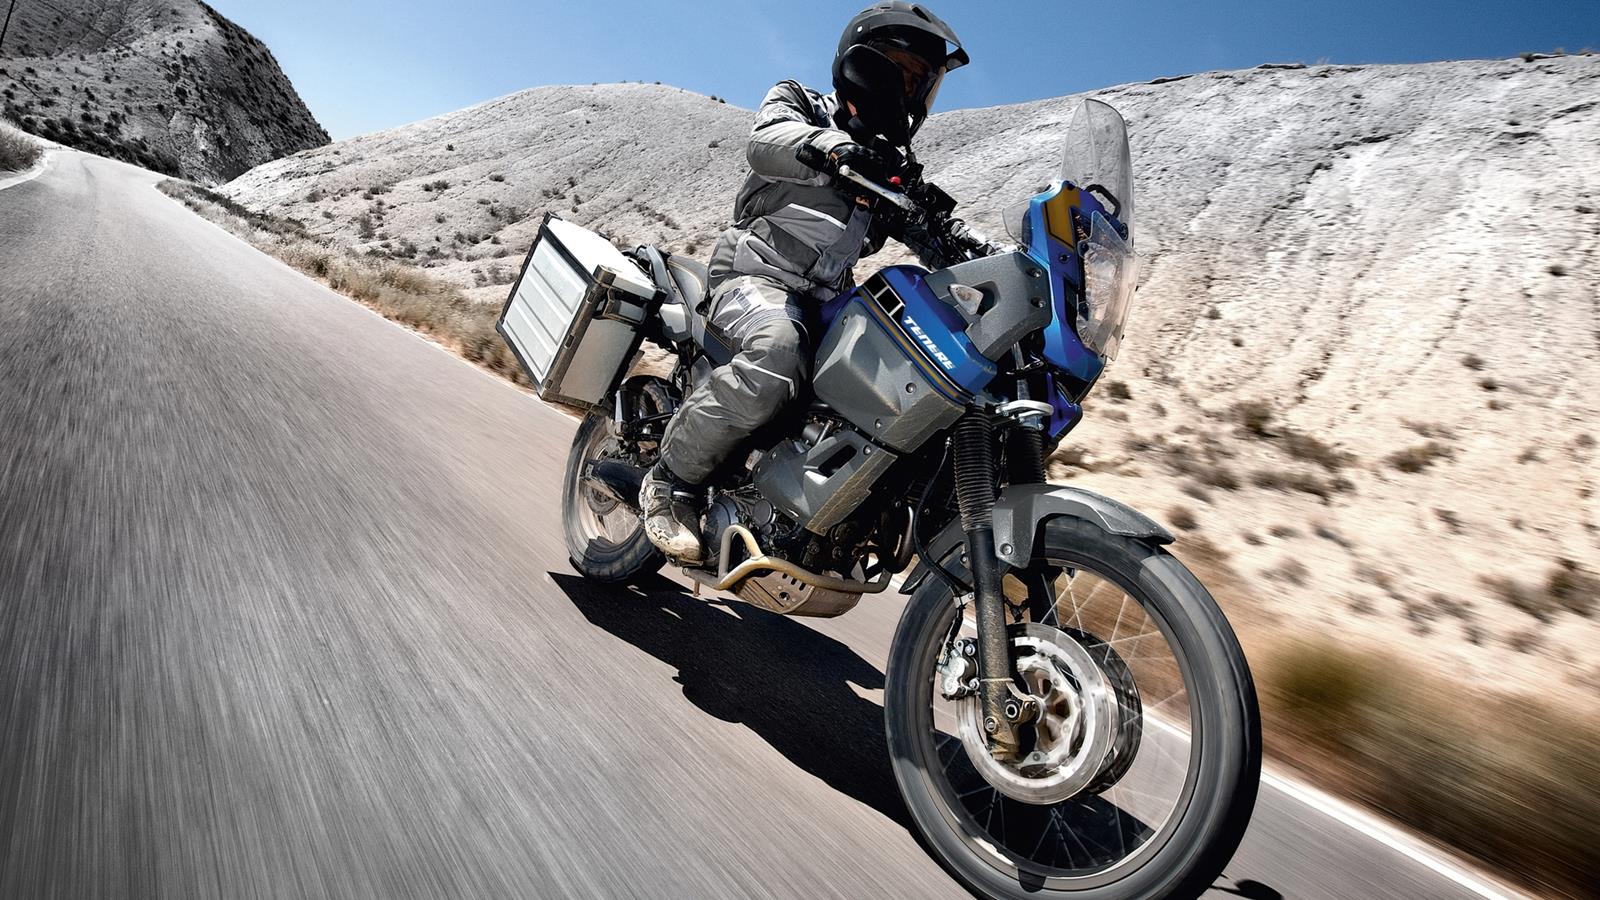 Kövesse a képzeletét! Készüljön fel a kalandra az XT660Z Ténérével ezzel a masszív, funkcionális és stílusos ketts célú motorkerékpárral.